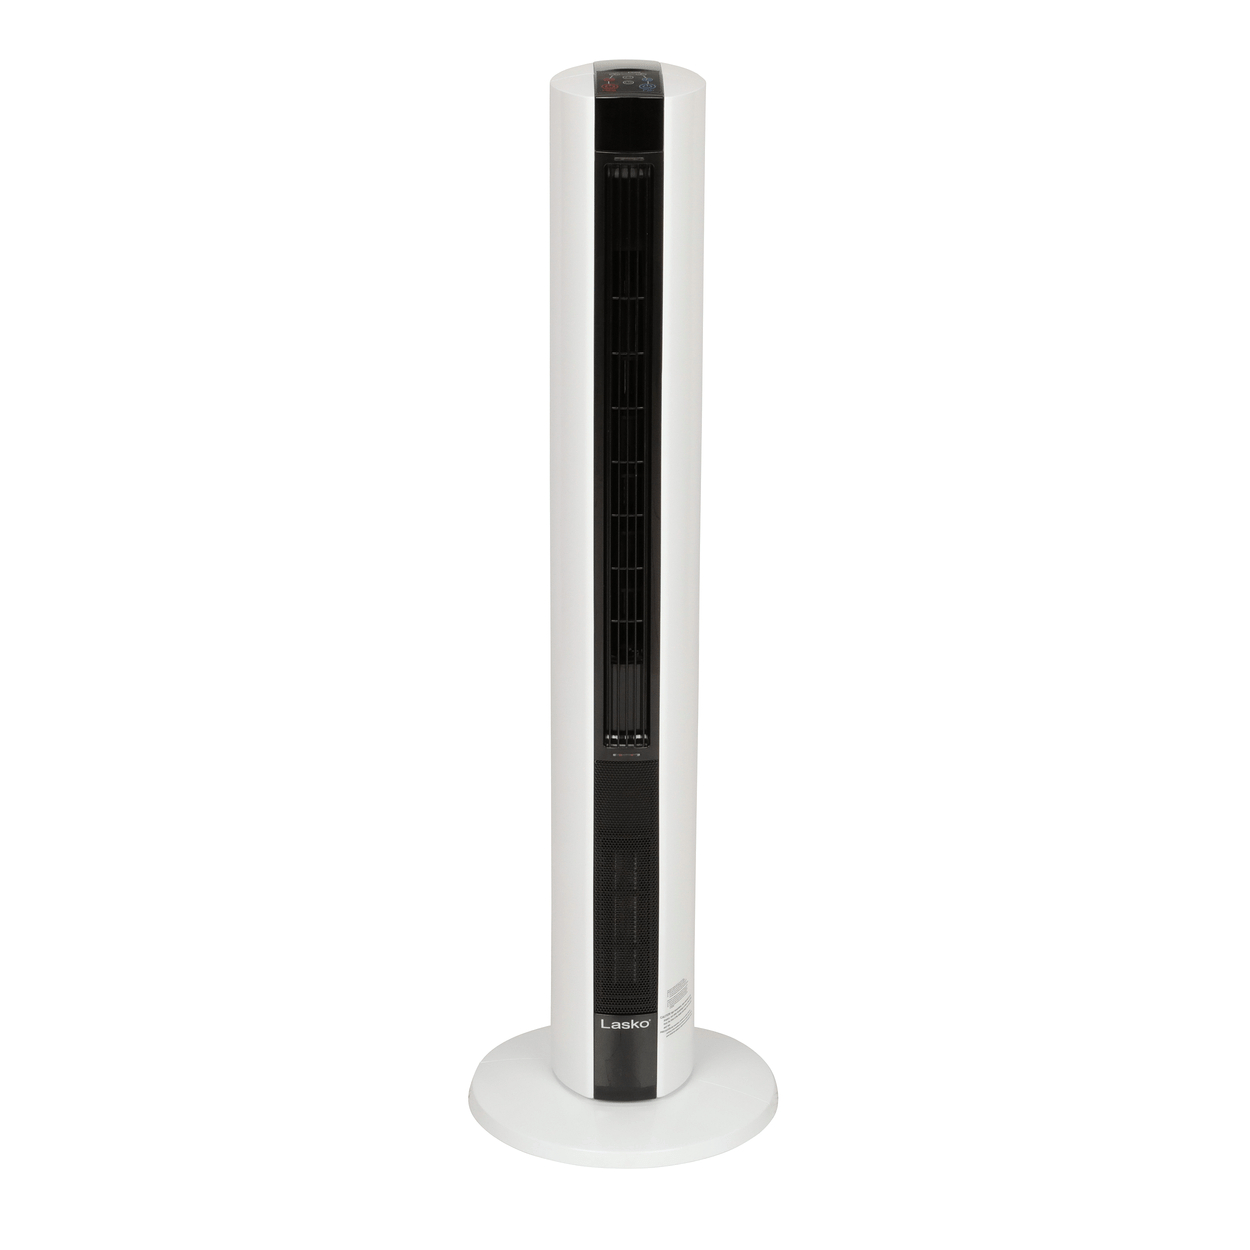 Lasko All Season Tower Fan Heater In One throughout dimensions 1250 X 1250